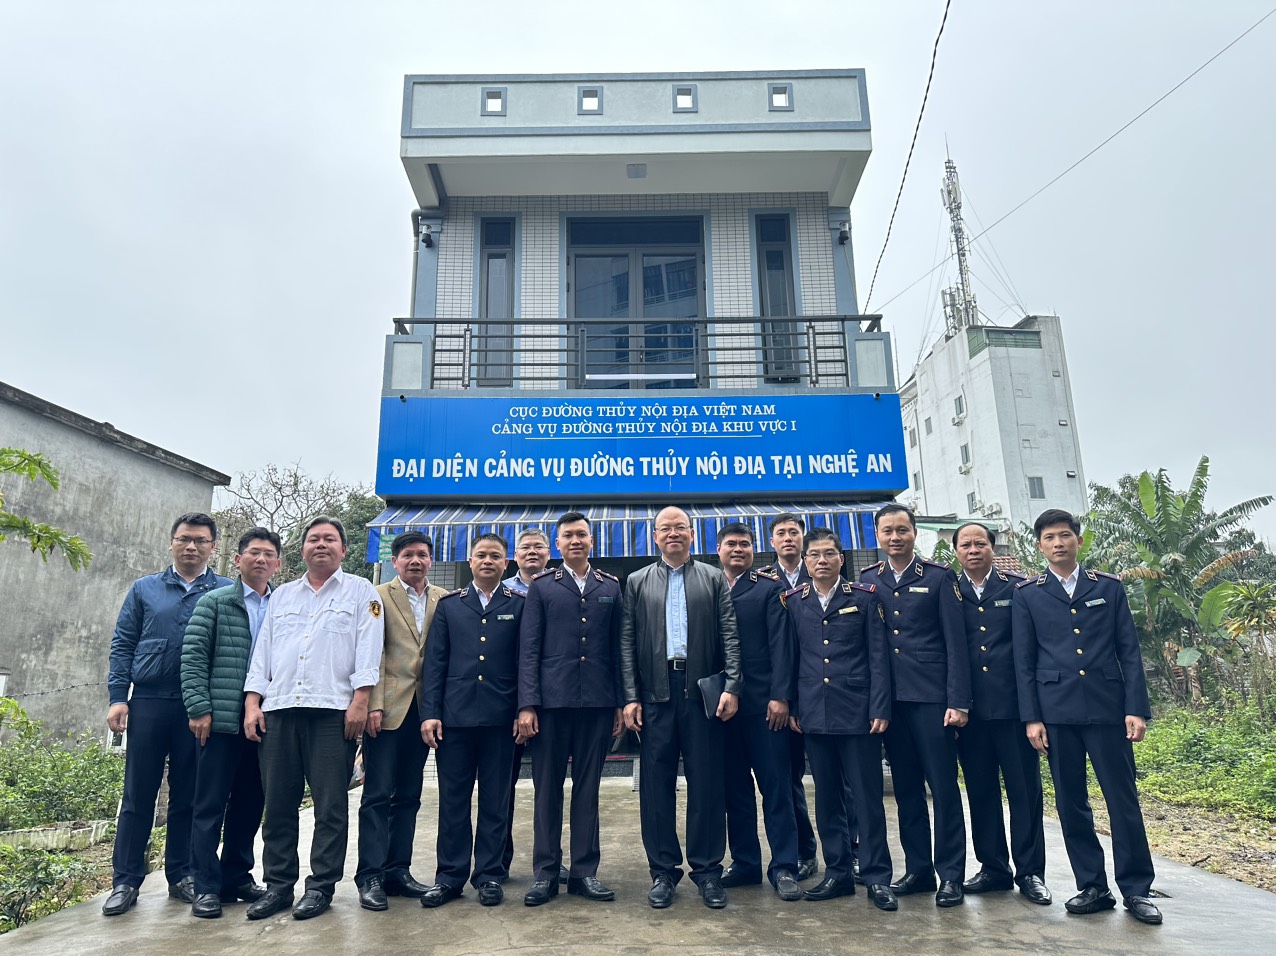 Cục trưởng Bùi Thiên Thu kiểm tra công tác quản lý nhà nước tại các tỉnh Thanh Hóa, Nghệ An, Hà Tĩnh